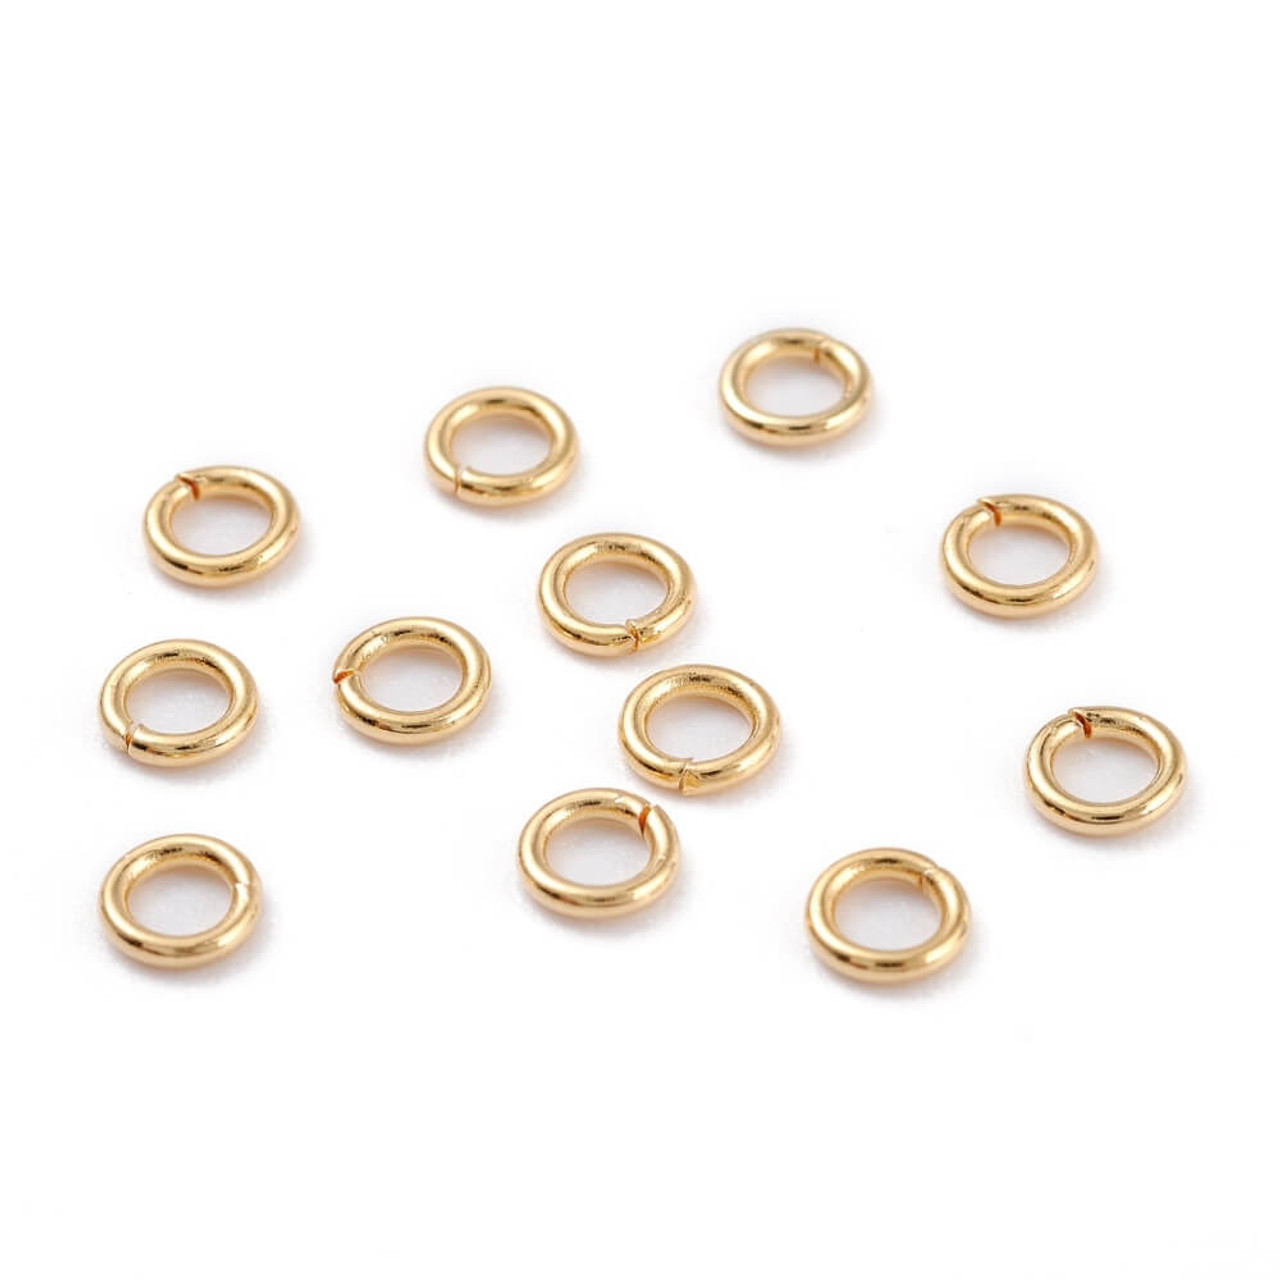 4mm Gold Filled Locking Jump Rings 14/20kt. 20ga. (25 pcs.)